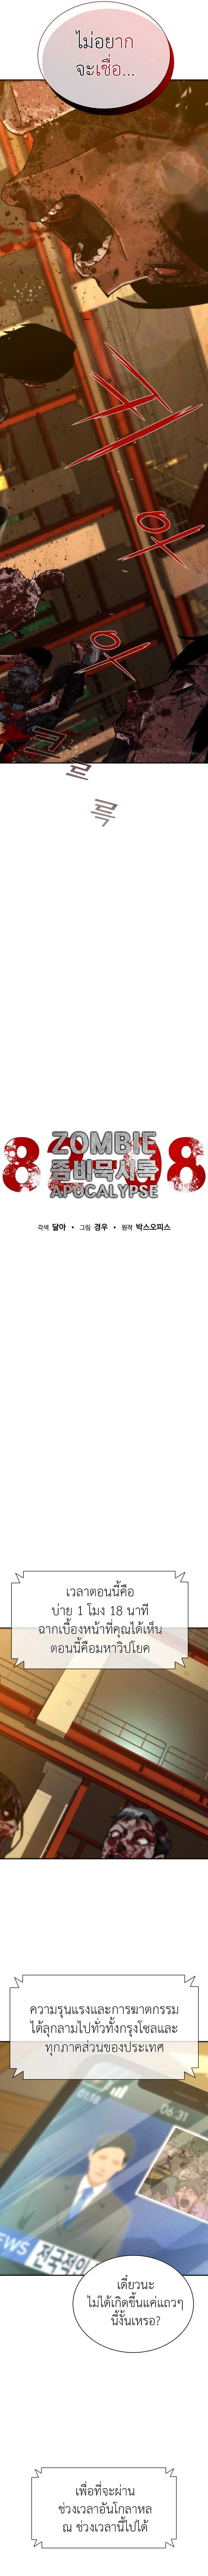 Zombie Apocalypse 12 17